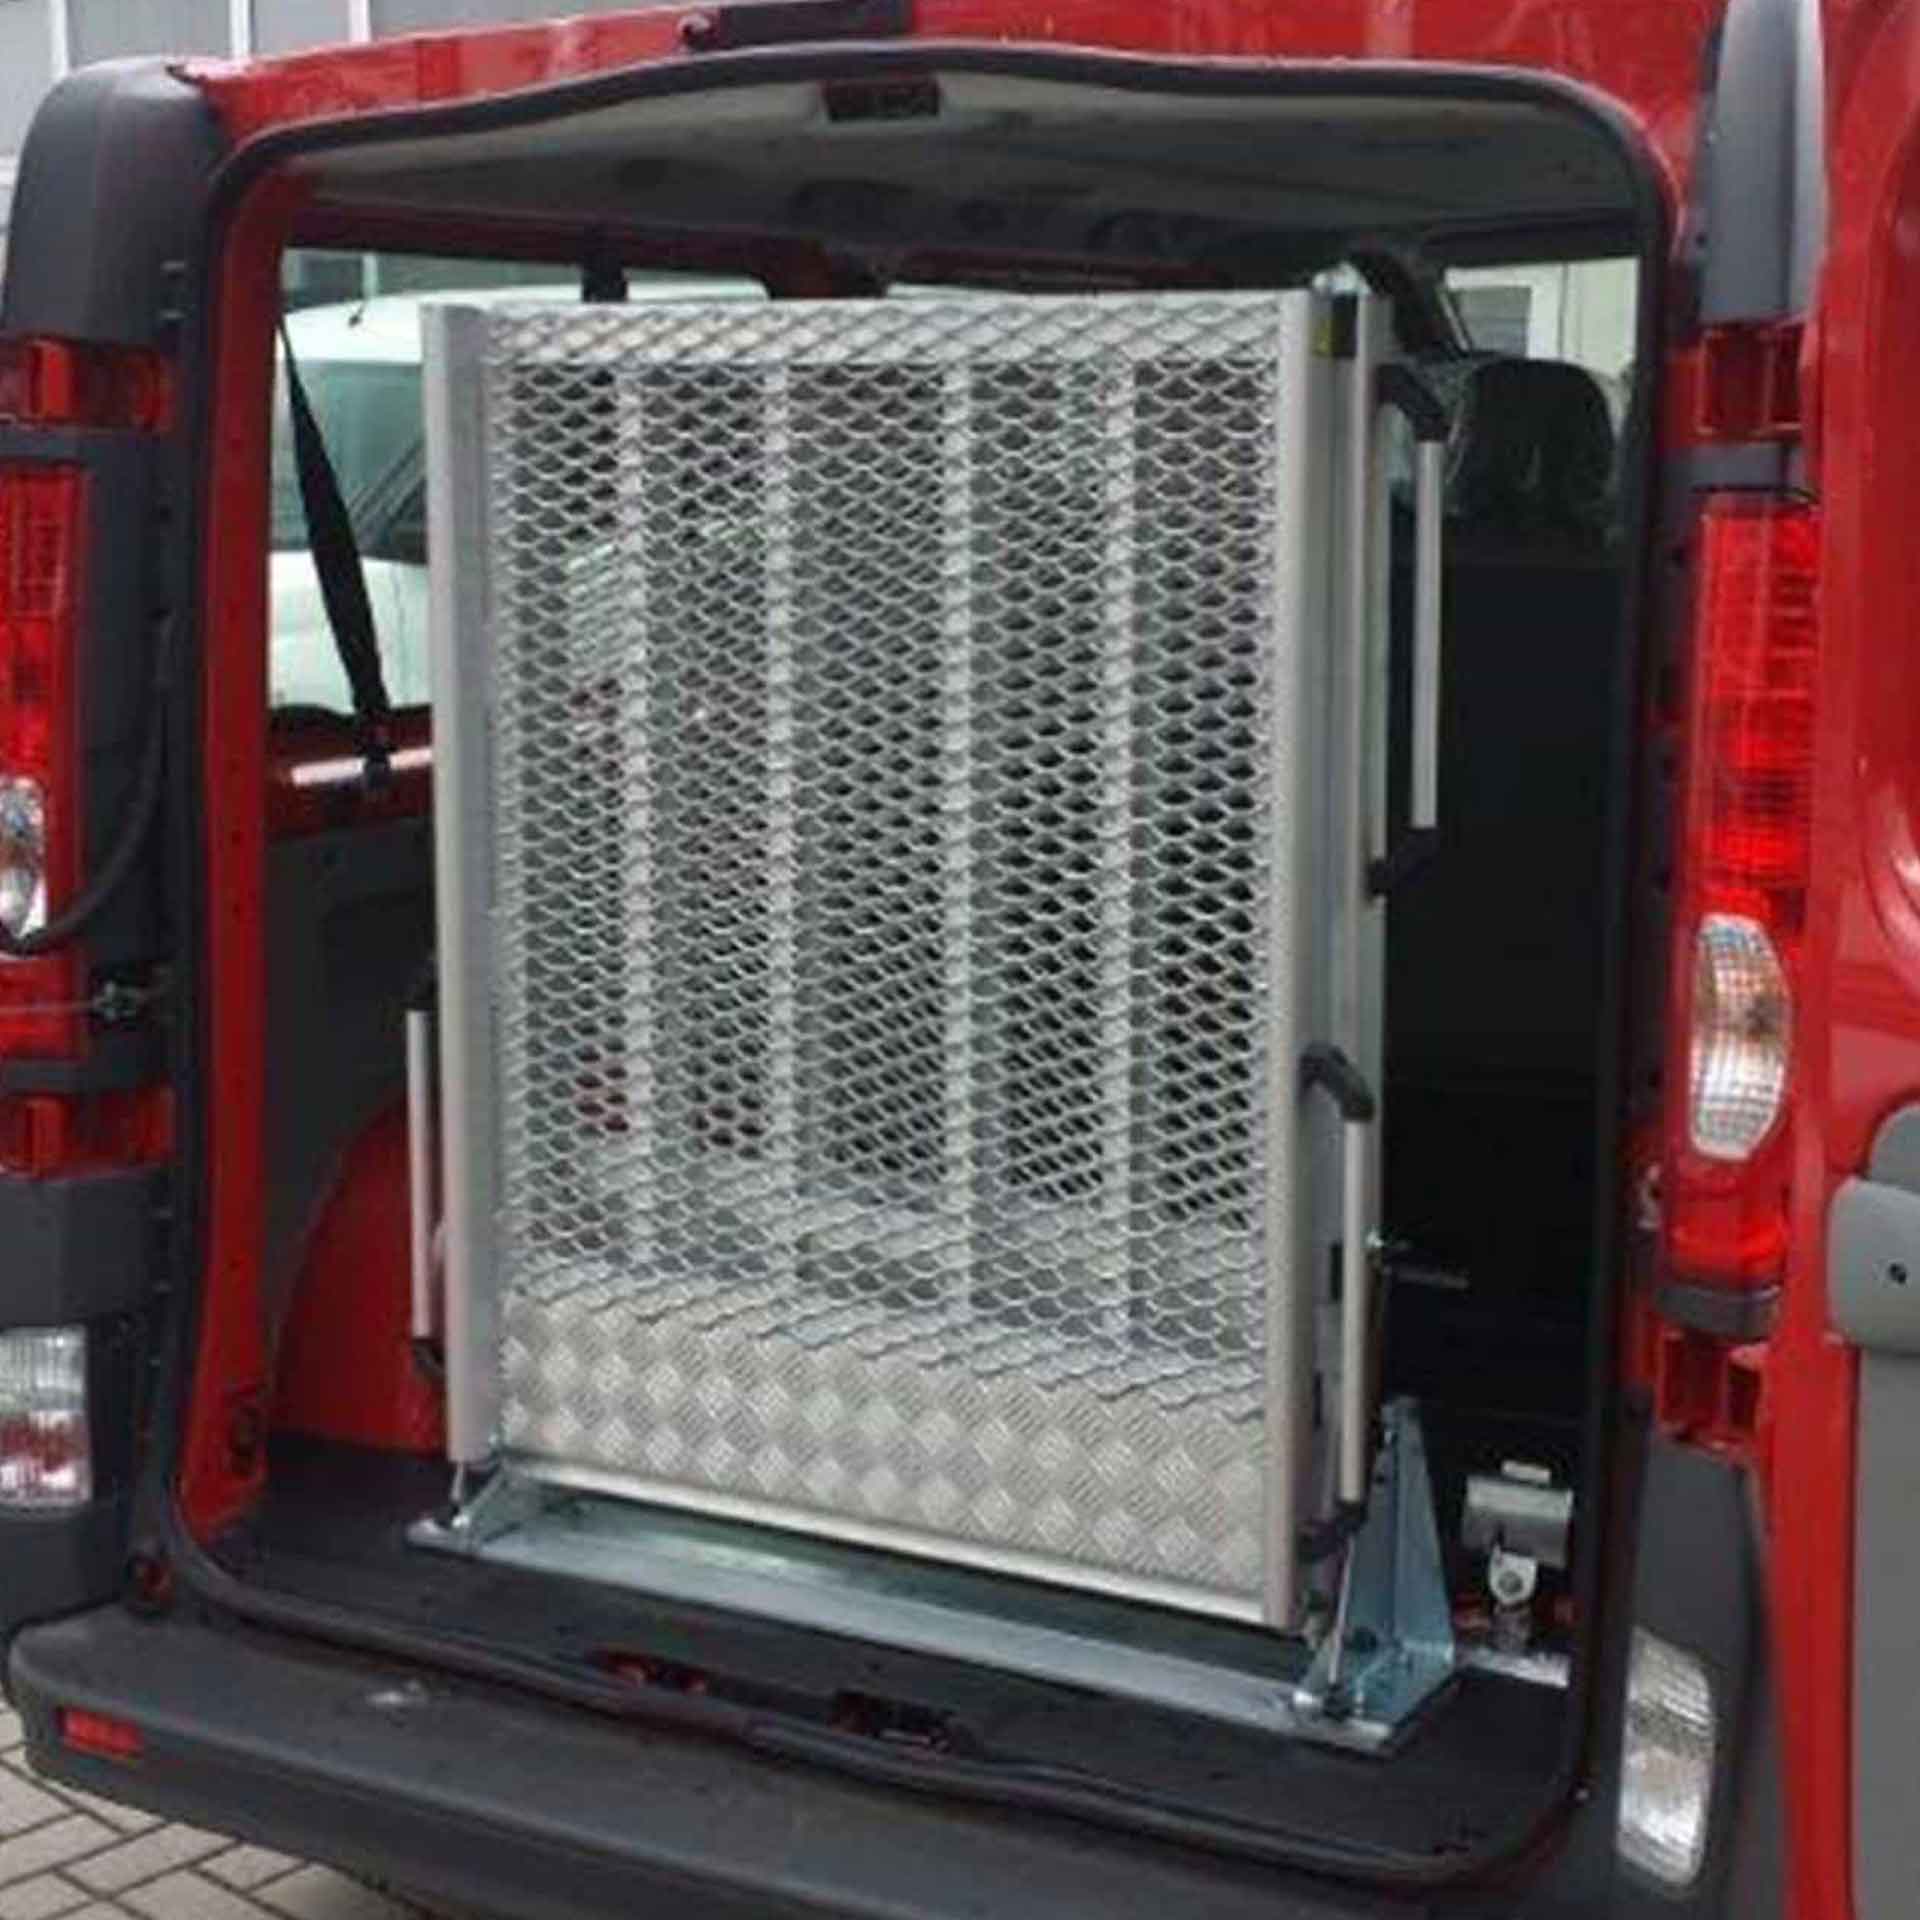 Serie EASY | Fest montierte Rollstuhlrampe für Kleinbusse - Abmessung 2.630 x 870 mm, mittig klappbar